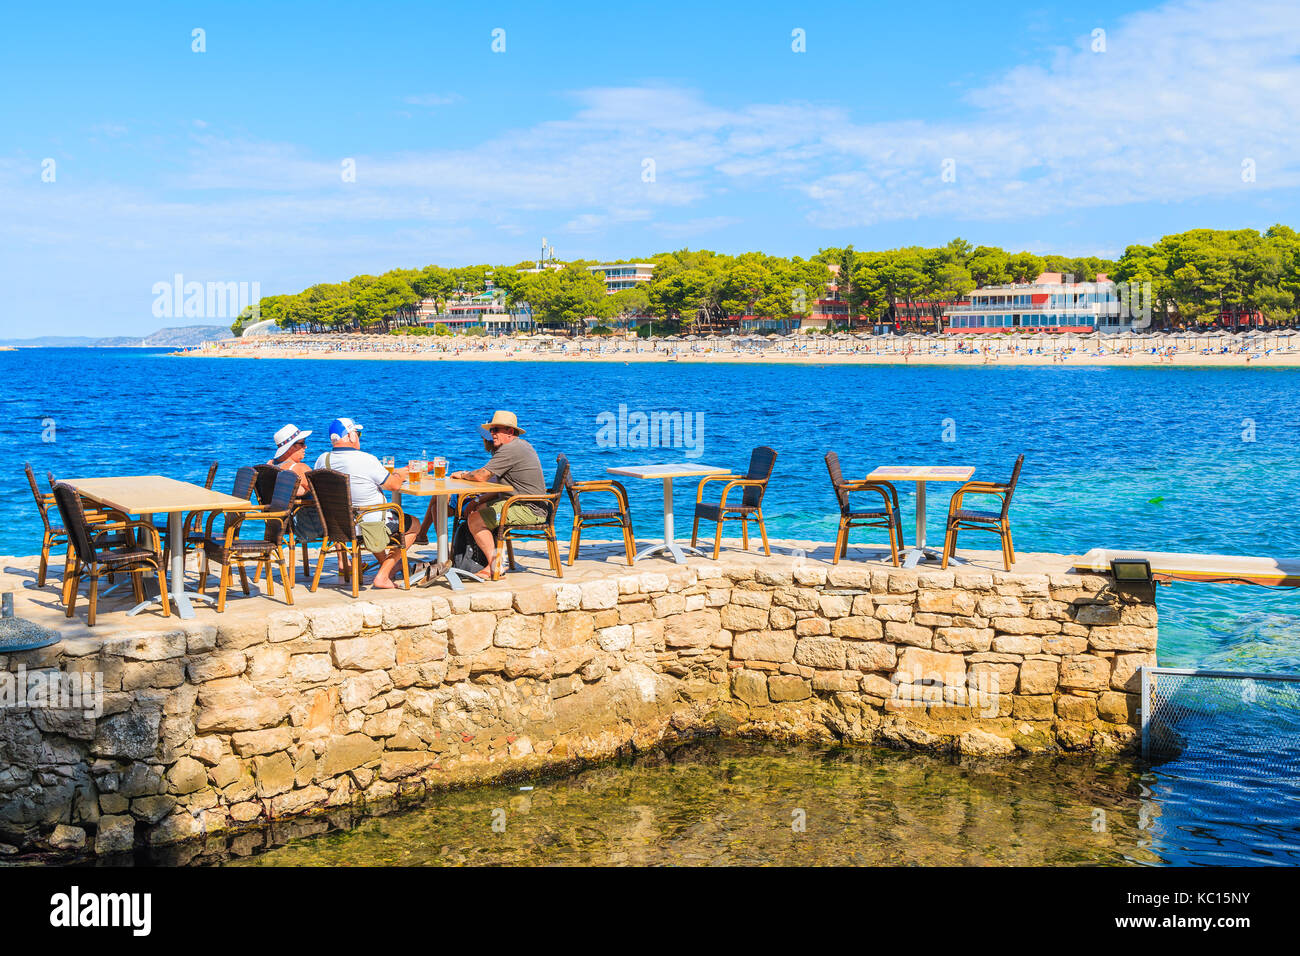 PRIMOSTEN, CROACIA - sep 5, 2017: los turistas sentados en la barra costera y bebiendo cervezas en Primosten town, Dalmacia, Croacia. Foto de stock